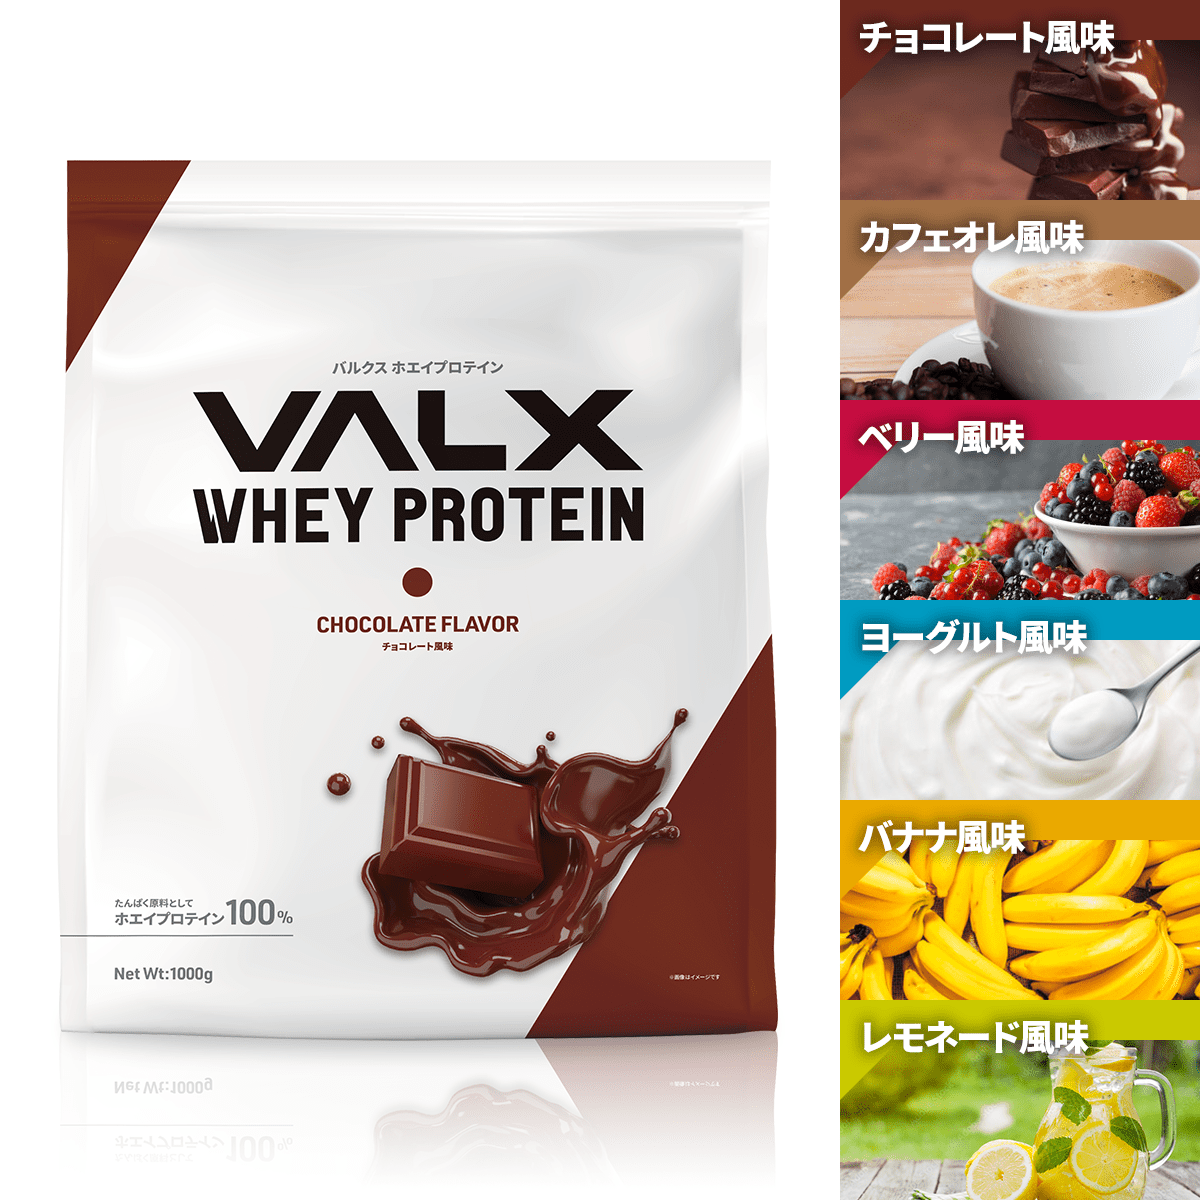 安い最安値【未開封】 VALX バルクス ホエイ プロテイン チョコレート風味 3kg ダイエットサプリ